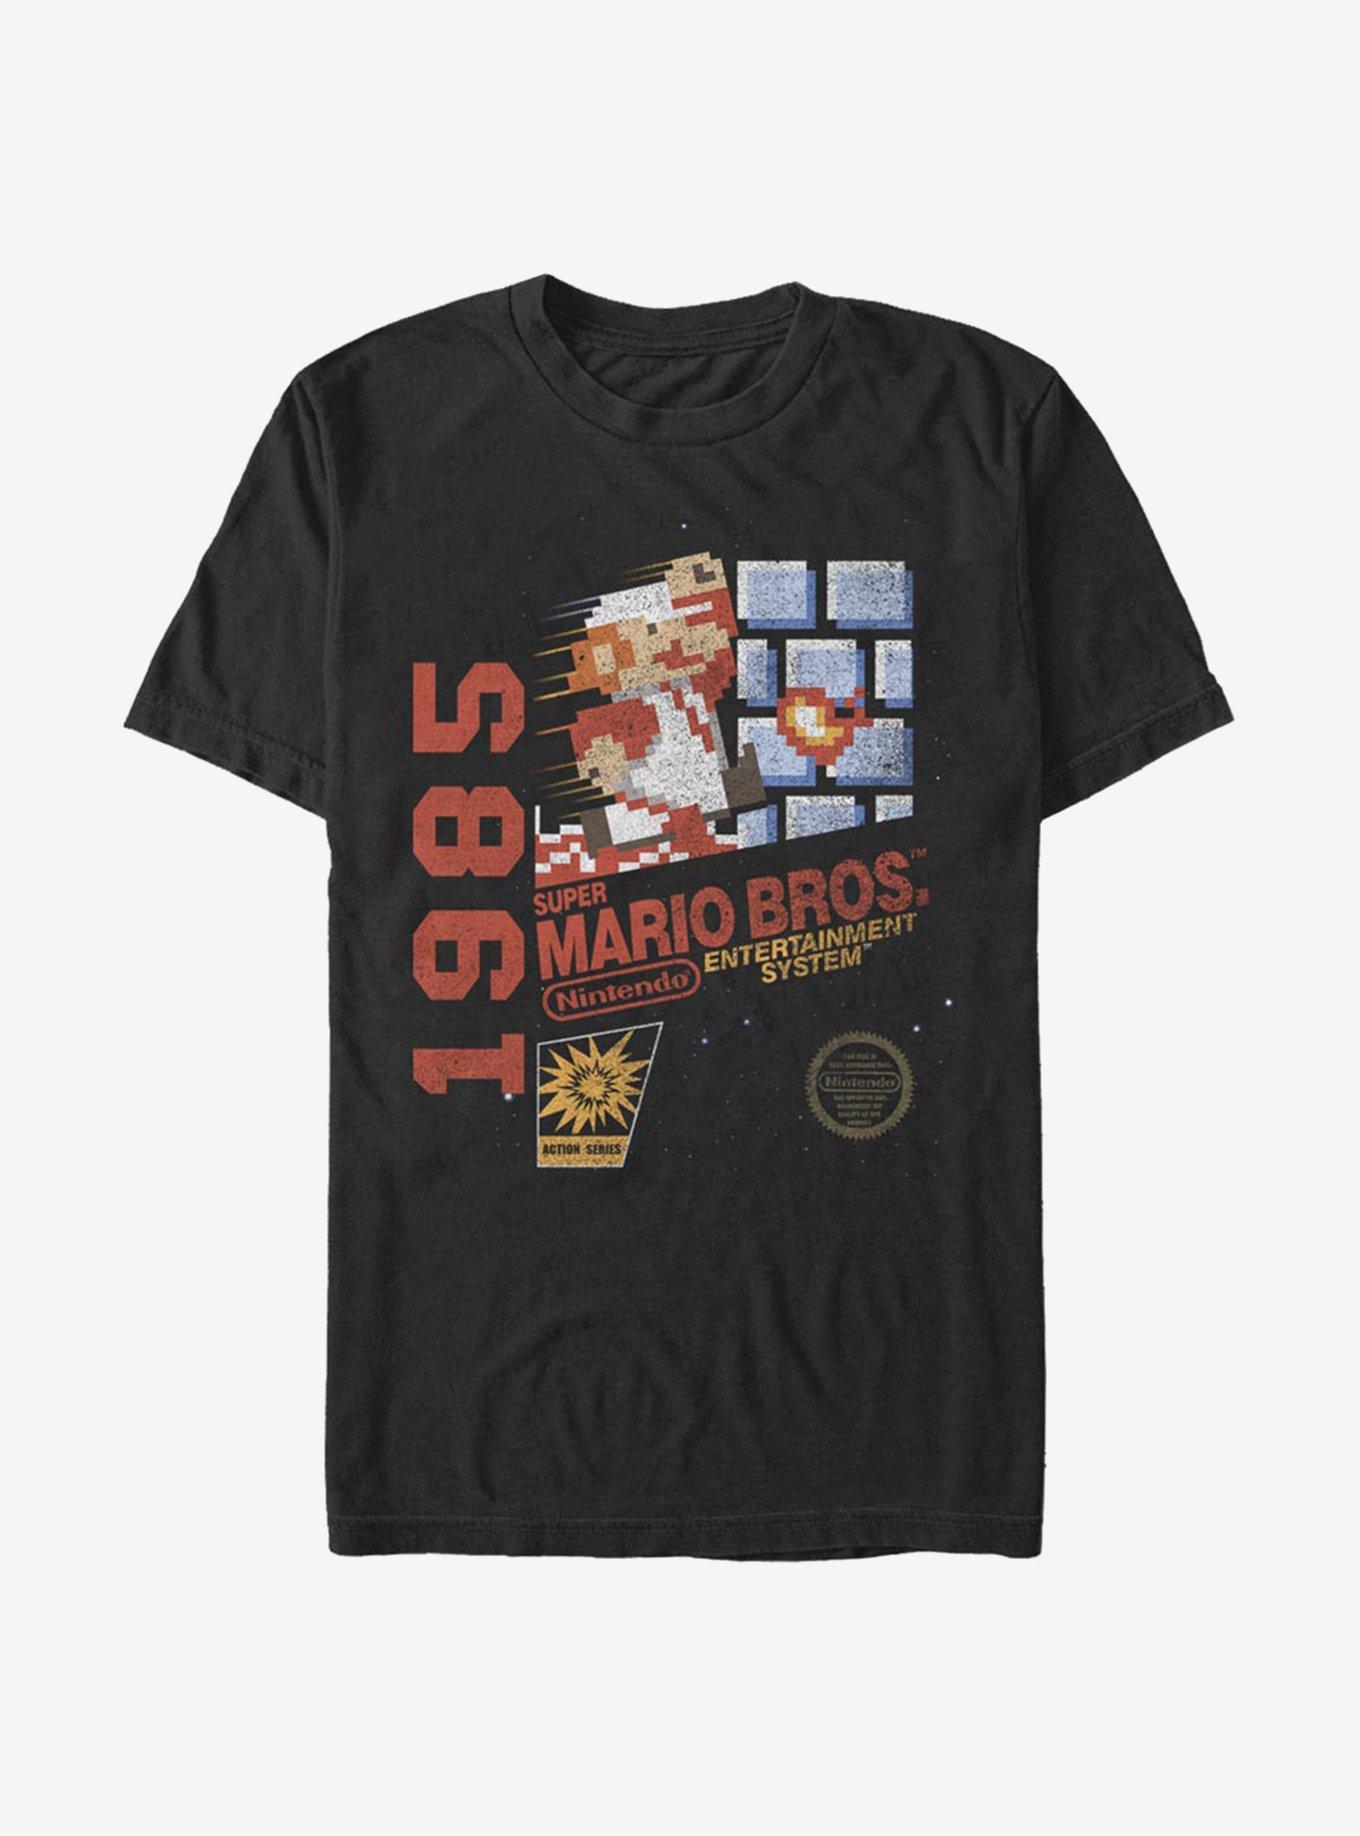 Super Mario Entertainment System 1985 Vintage T-Shirt